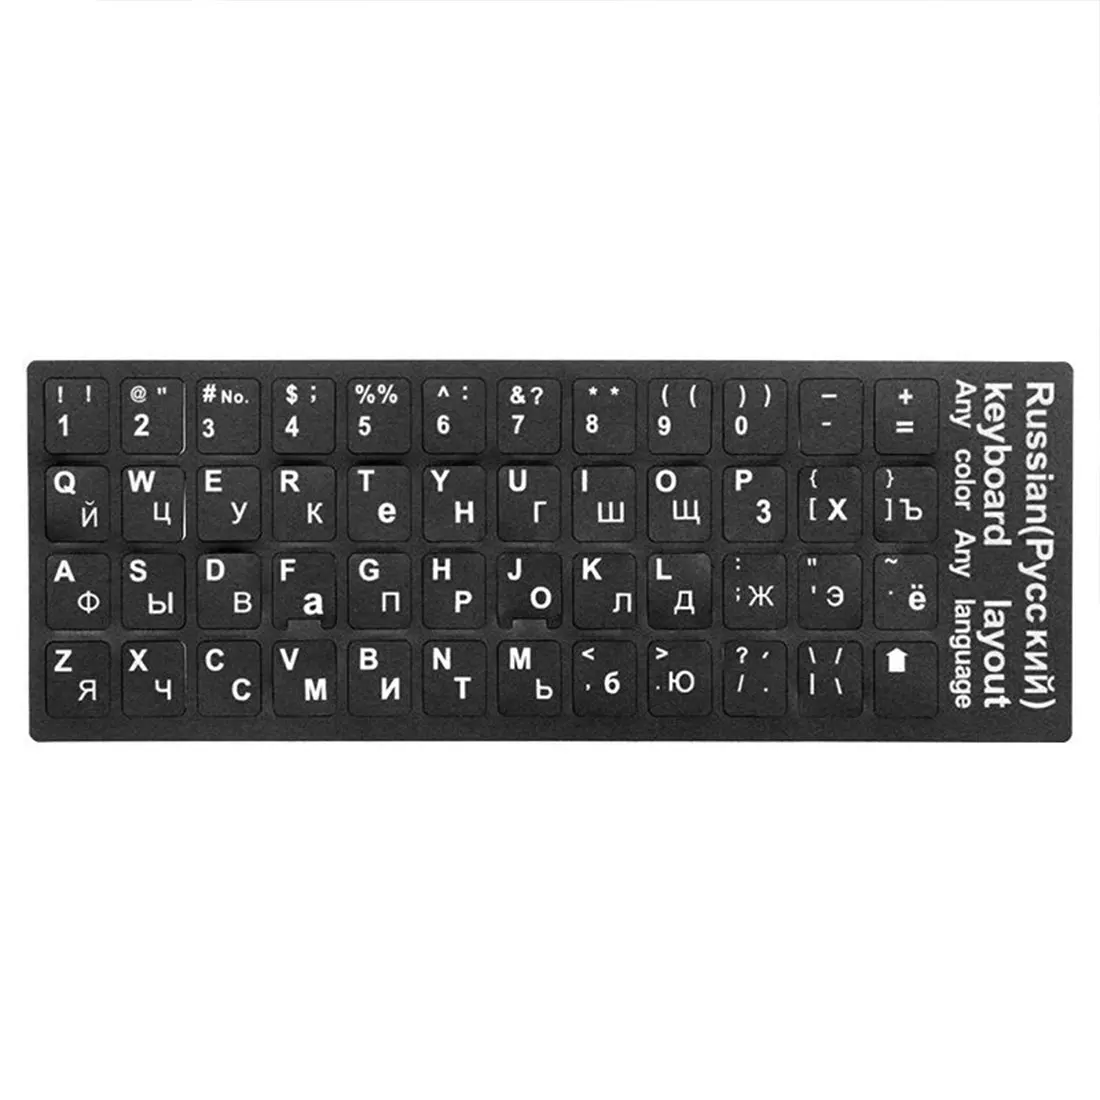 Водонепроницаемый Стандартный русский язык клавиатура наклейки раскладка с кнопками буквы алфавит для компьютерной клавиатуры защитная пленка